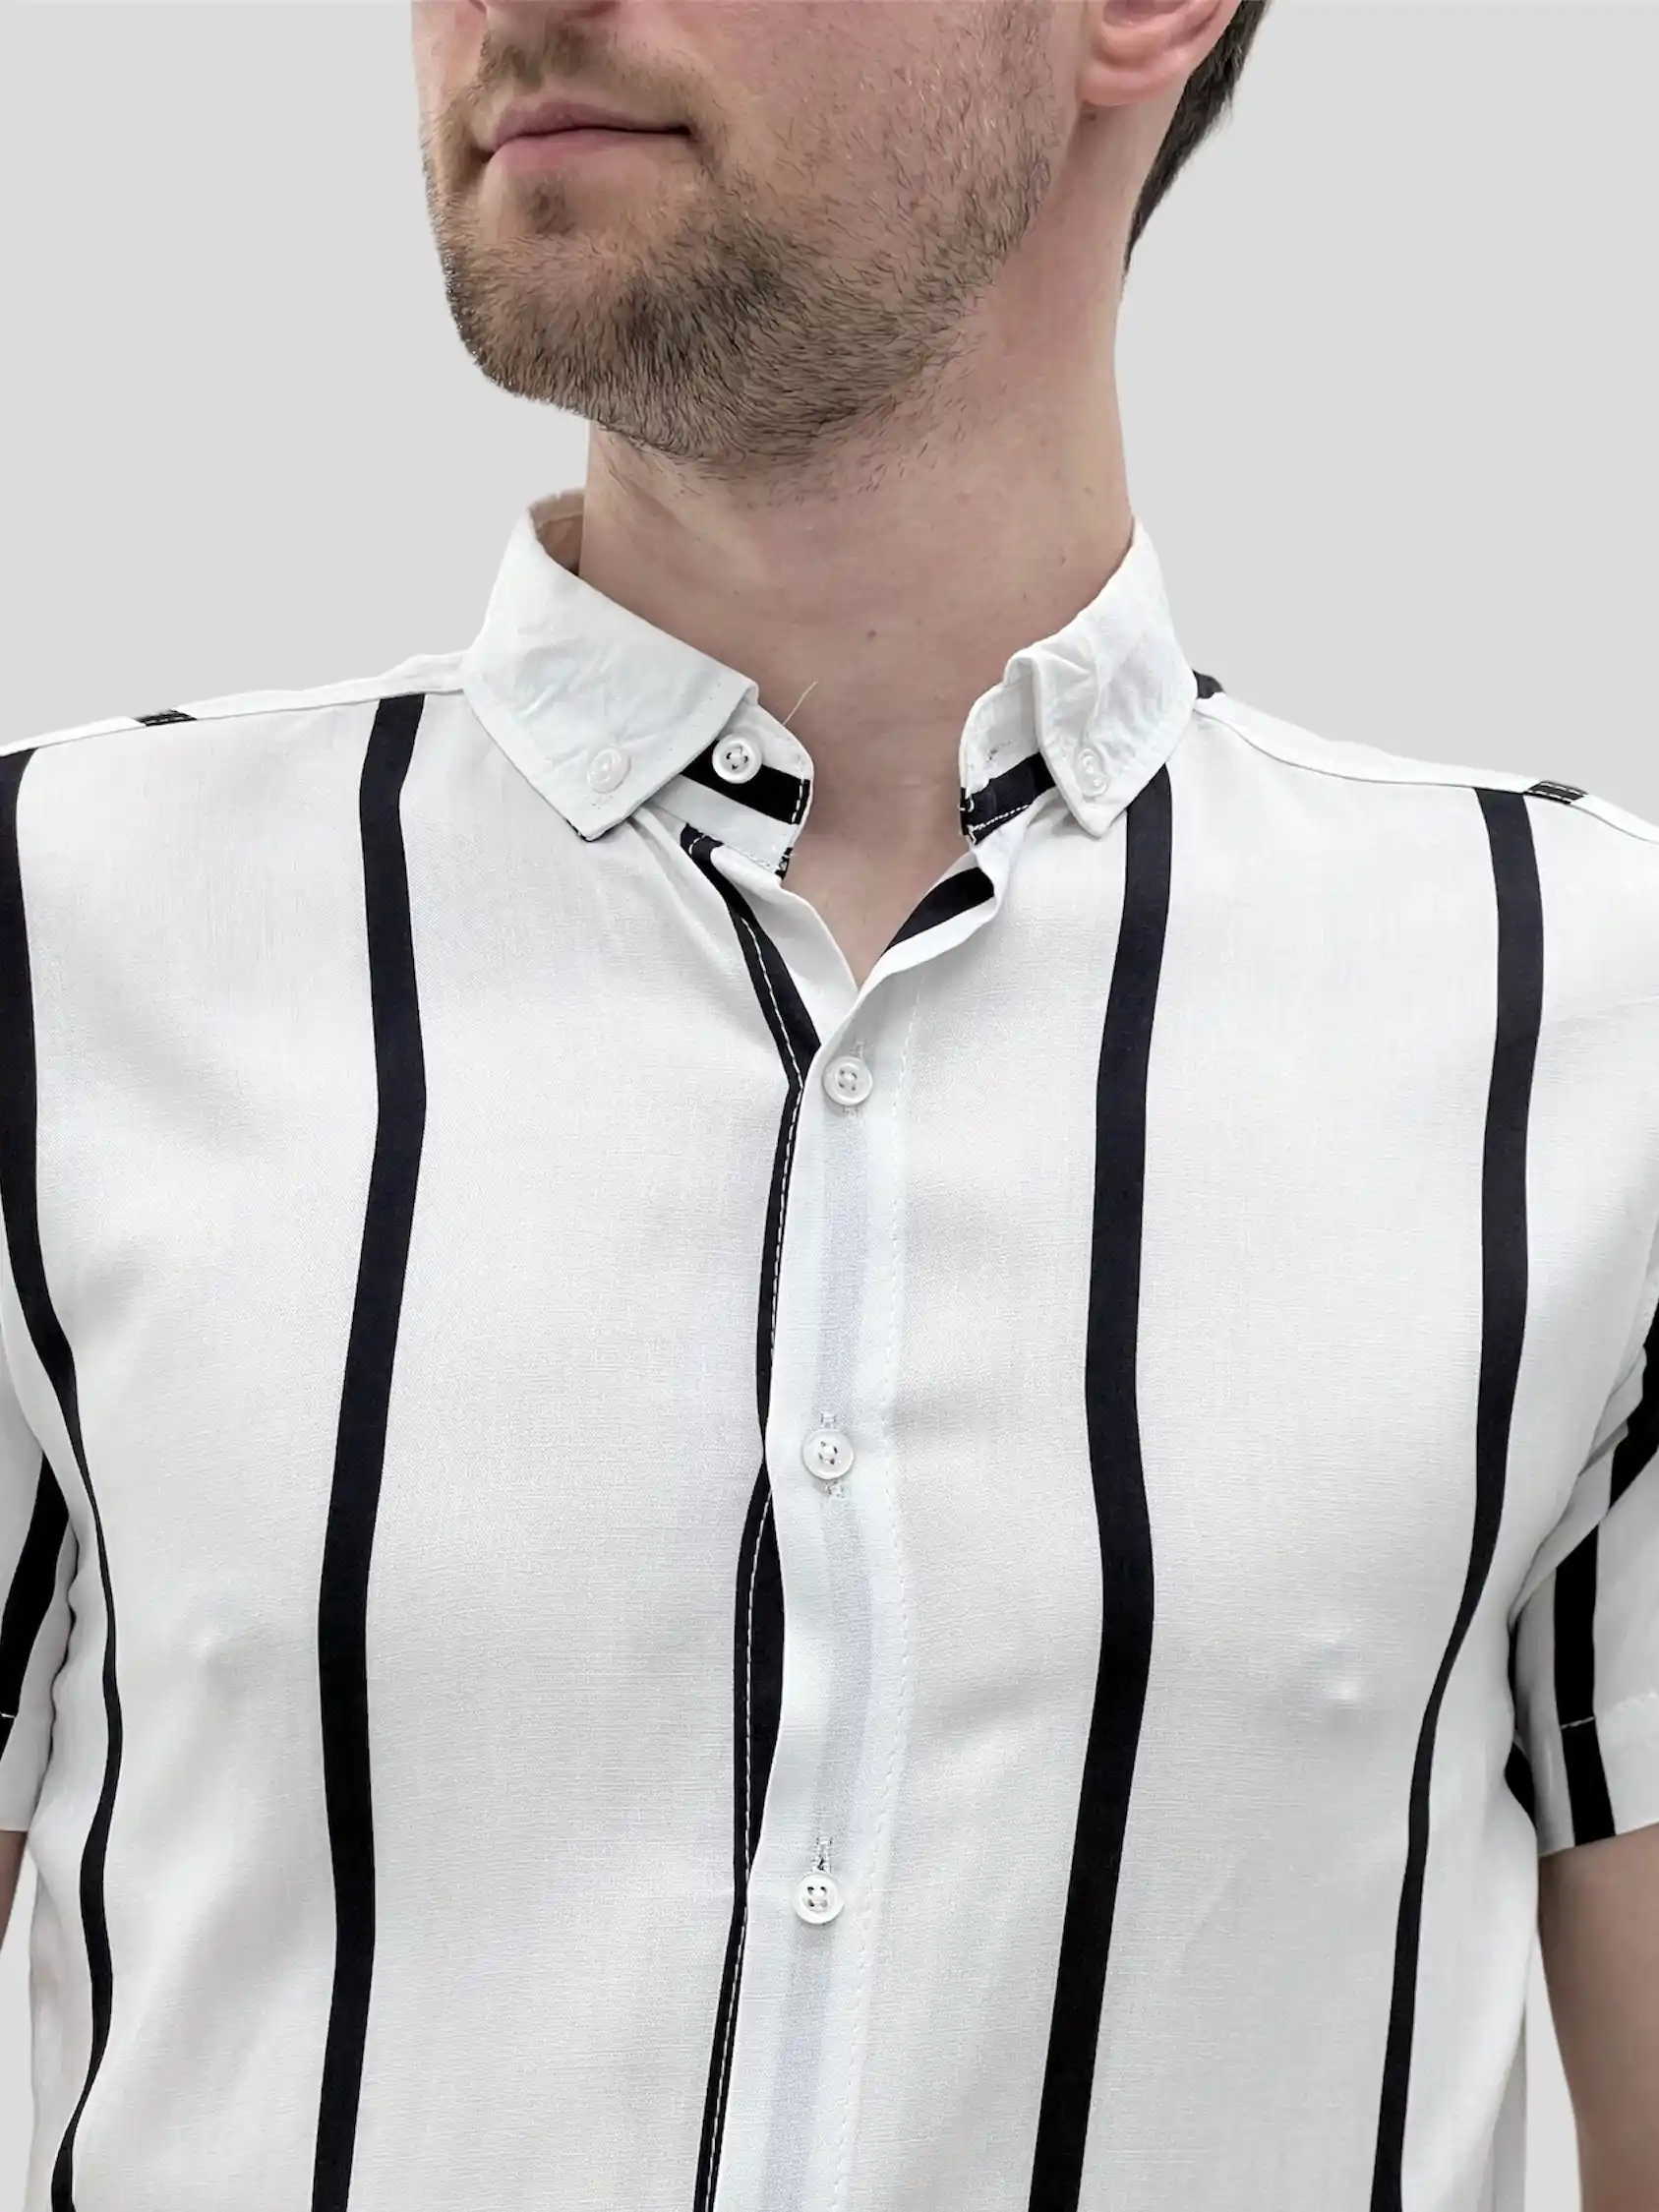 Αντρικό πουκάμισο κανονική γραμμή κοντομάνικο άσπρο με μαύρη ρίγα